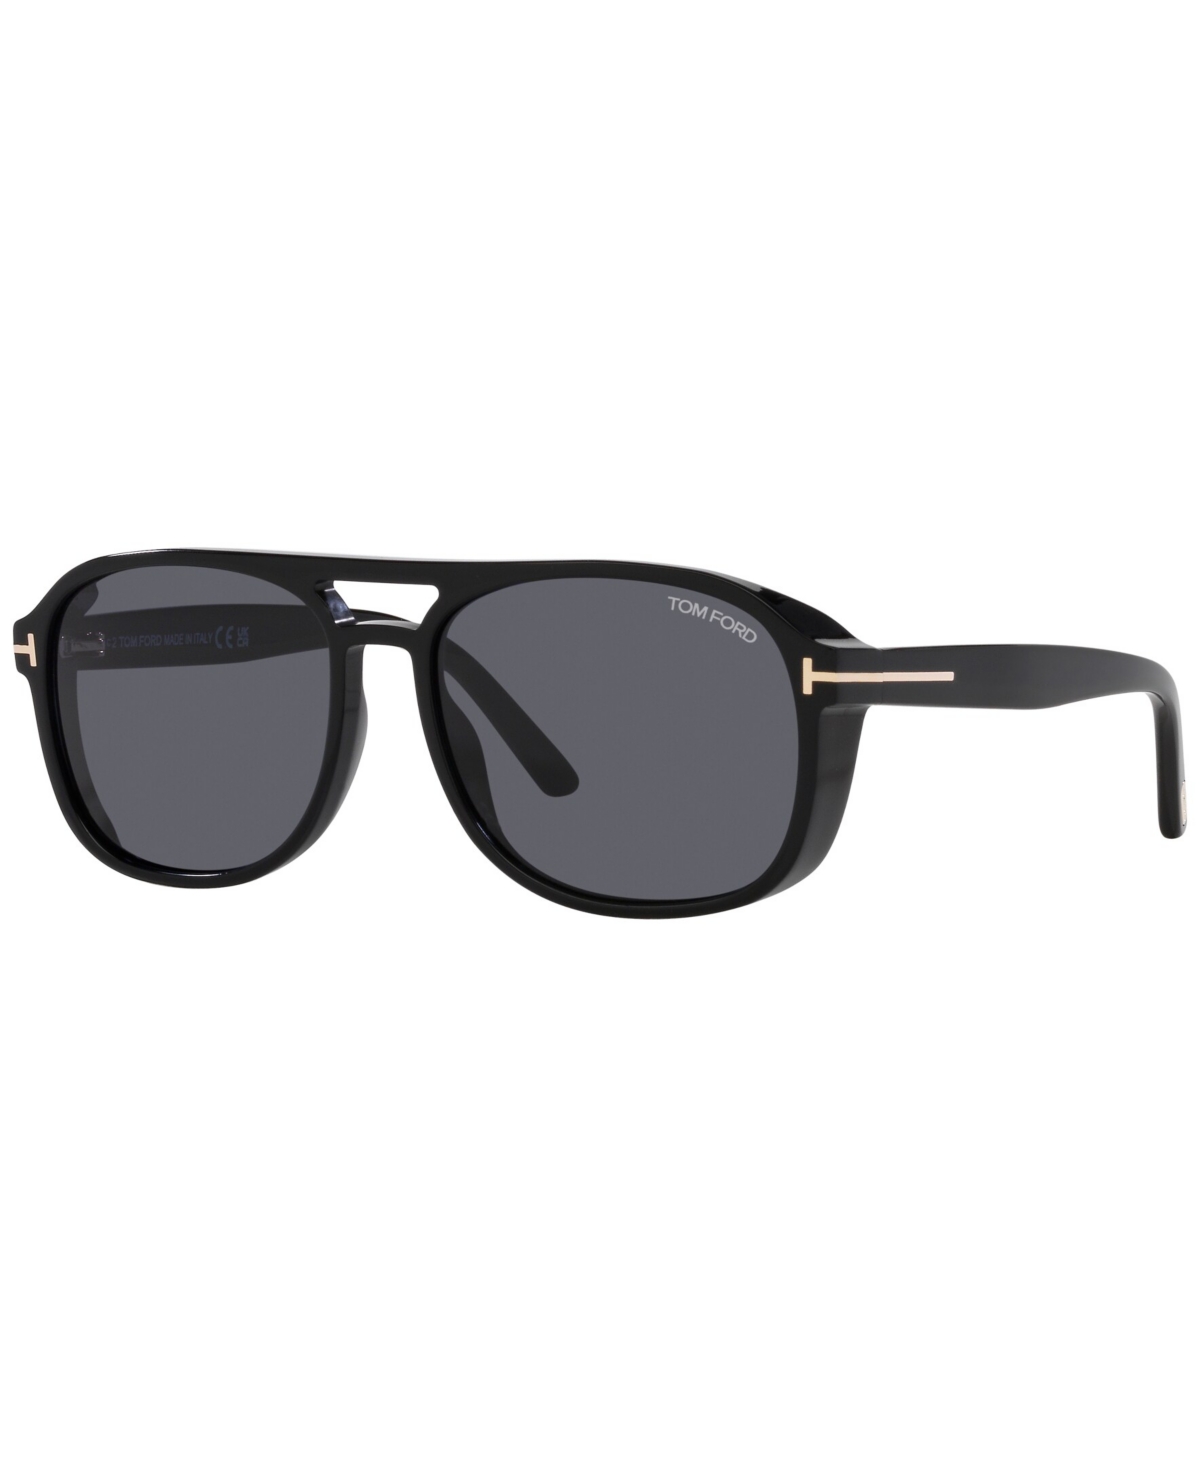 Tom Ford Men's Sunglasses, Rosco In Shiny Black